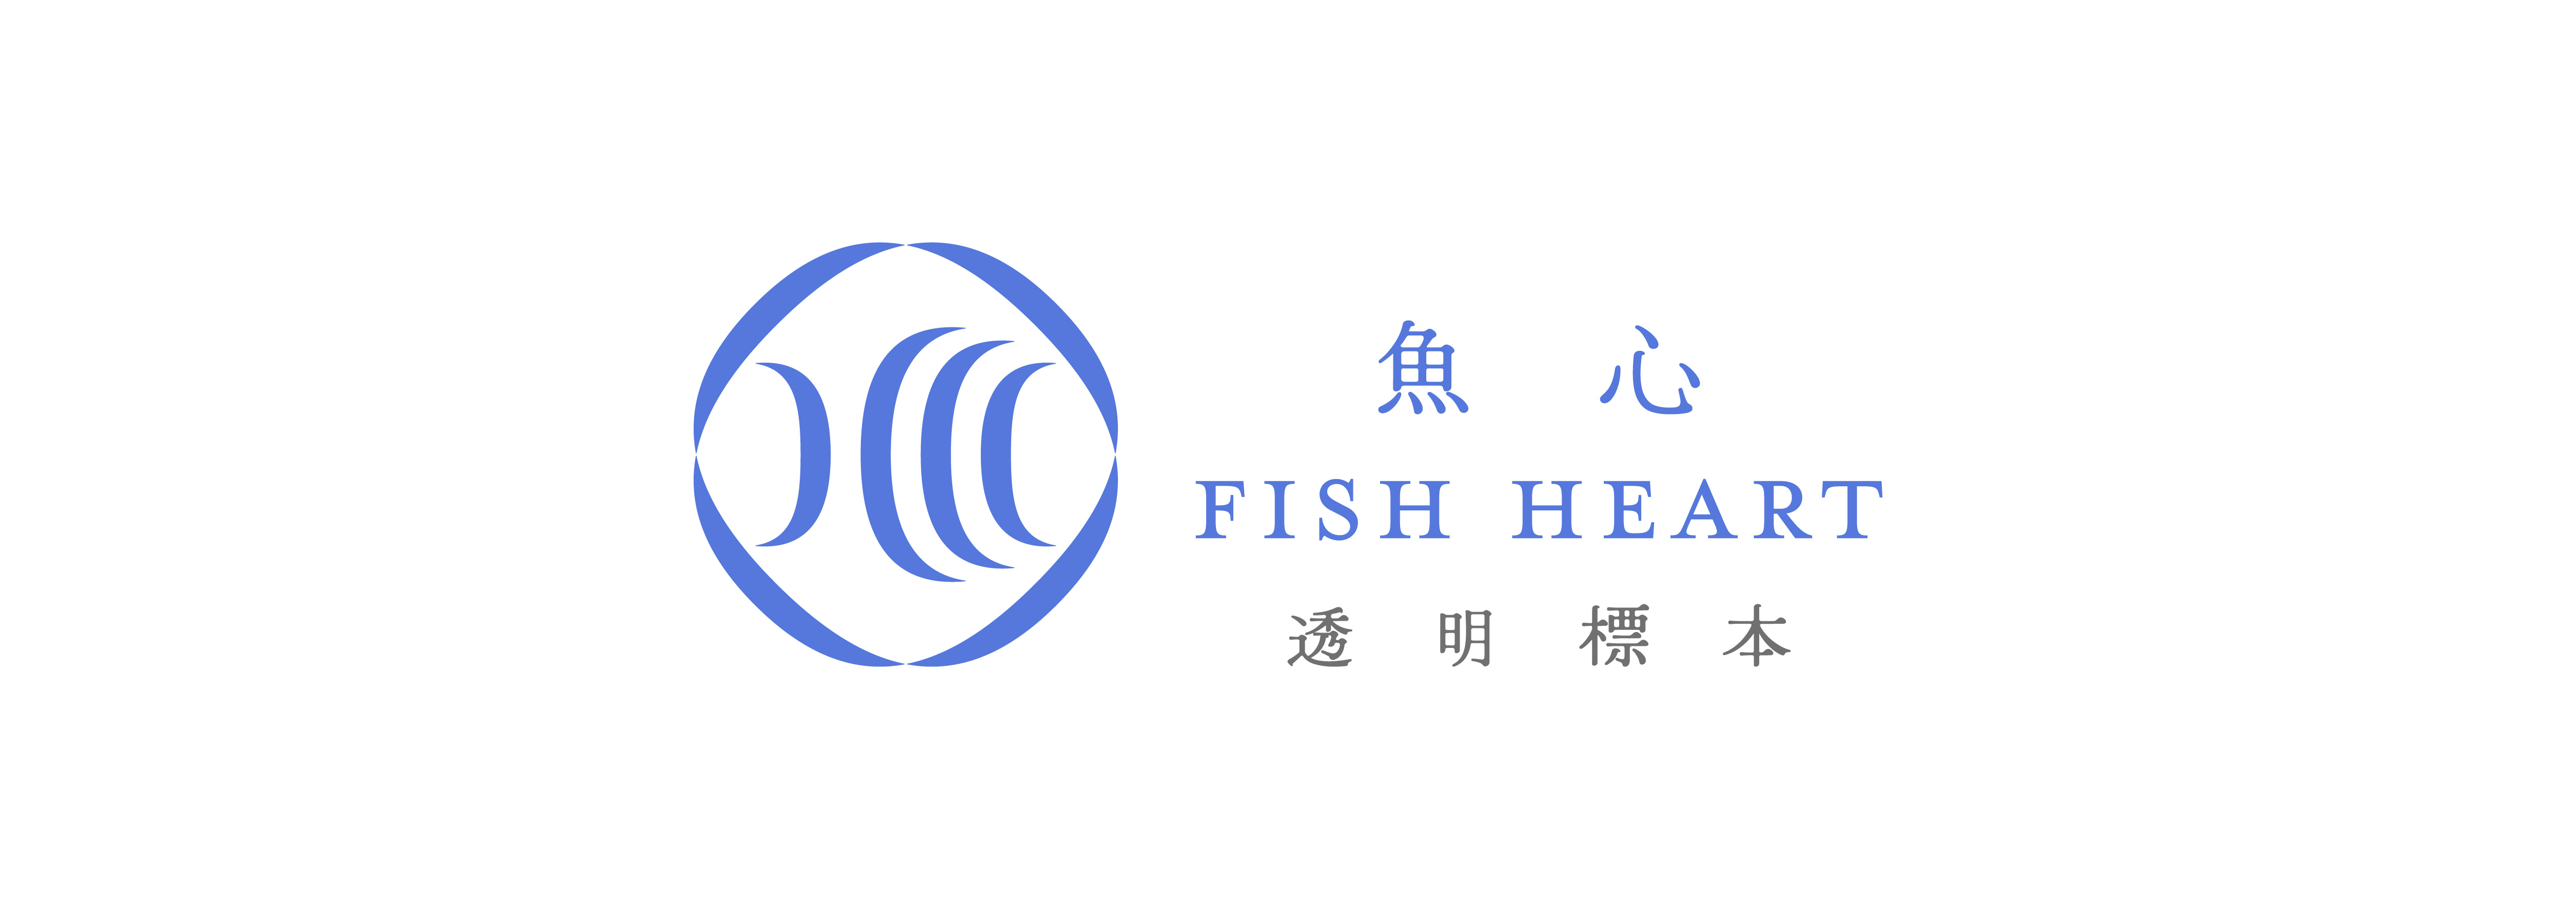 Fish Heart 魚心標本藝術 - 透明生物標本專賣